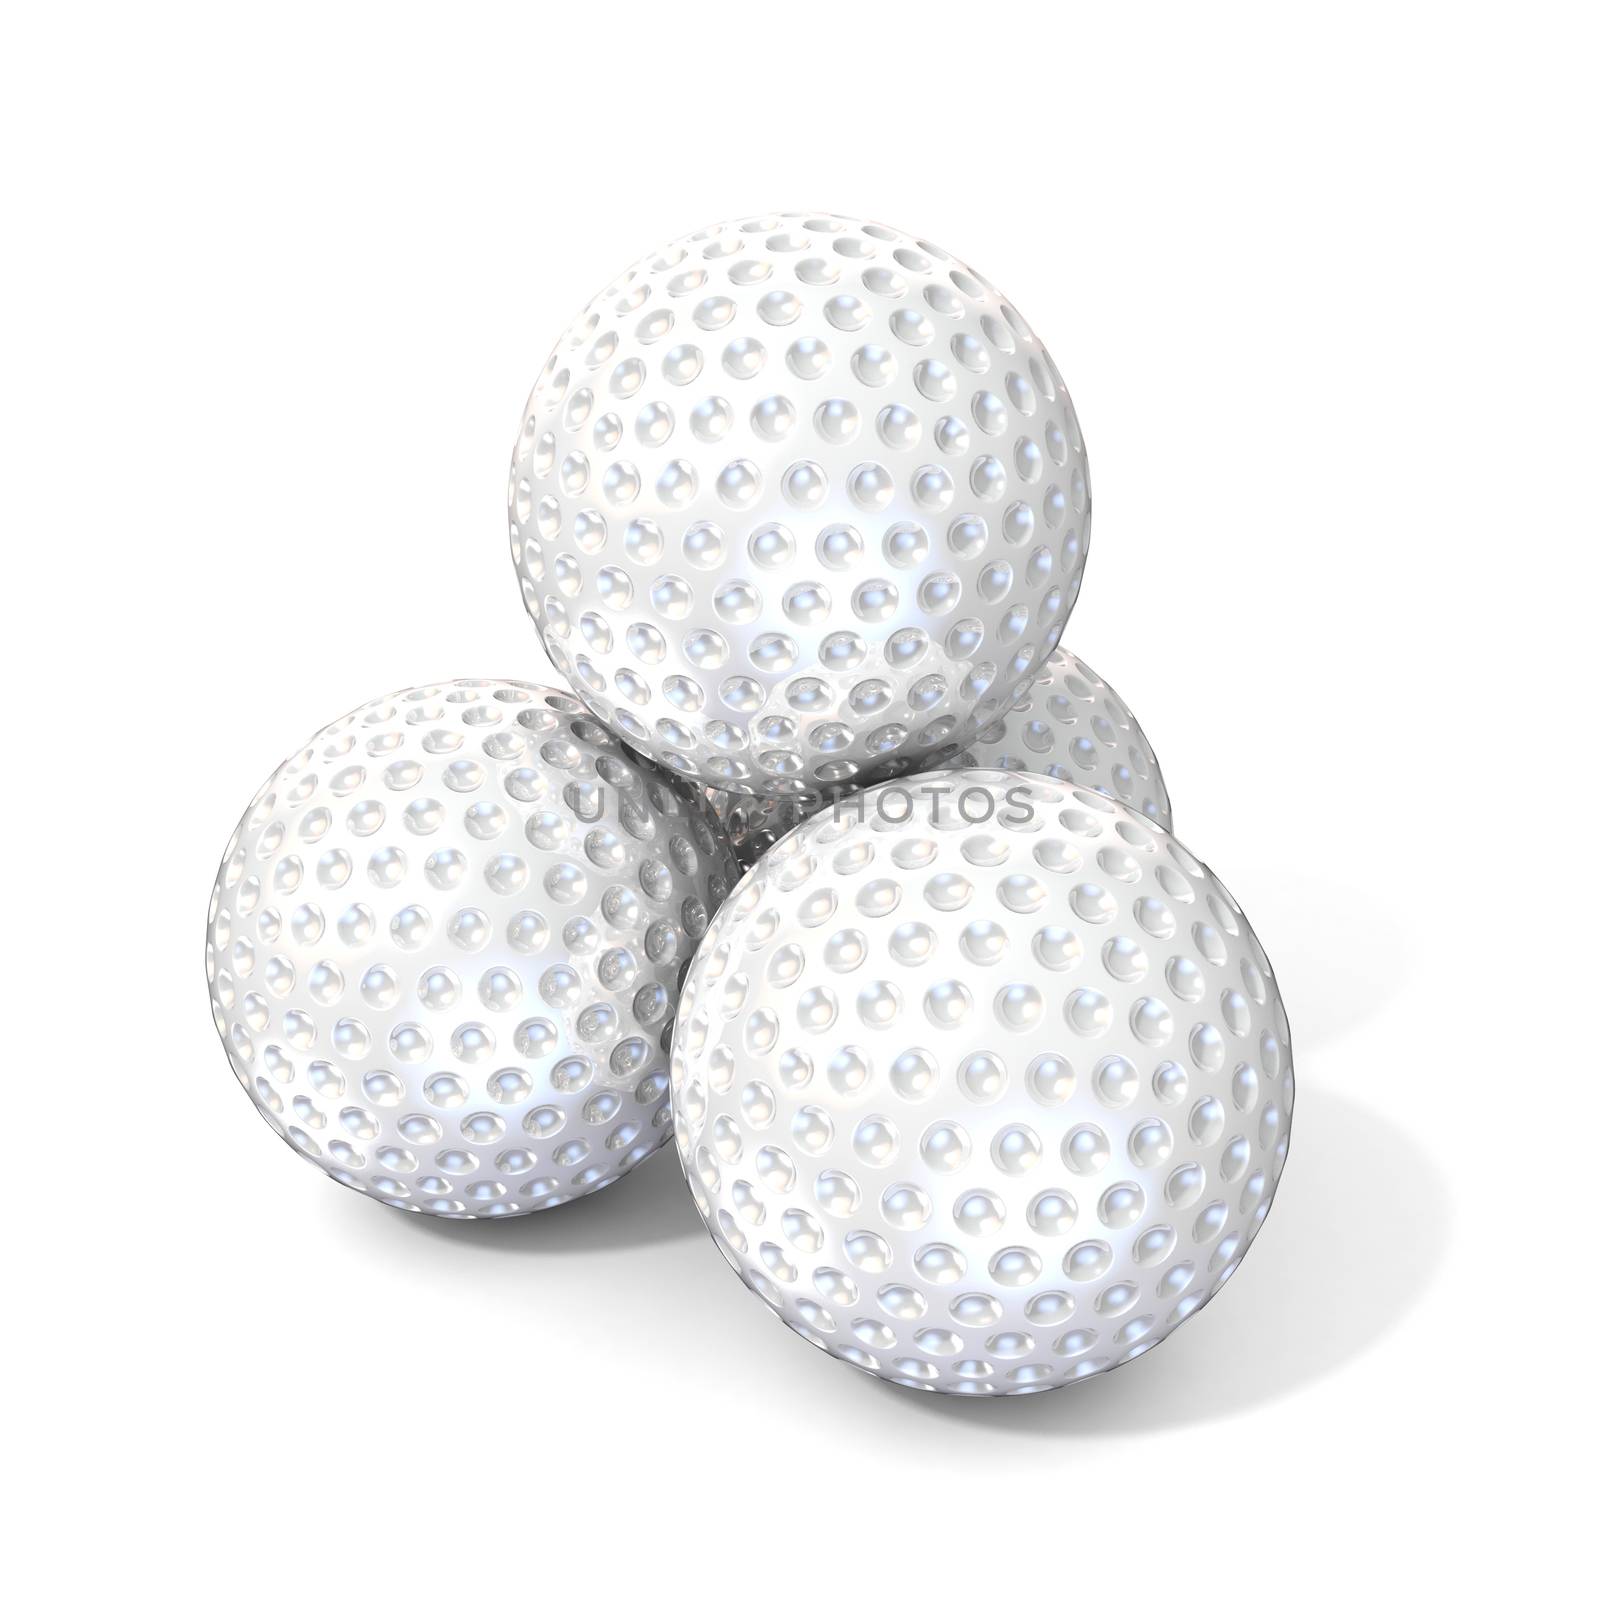 Golf balls. 3D by djmilic